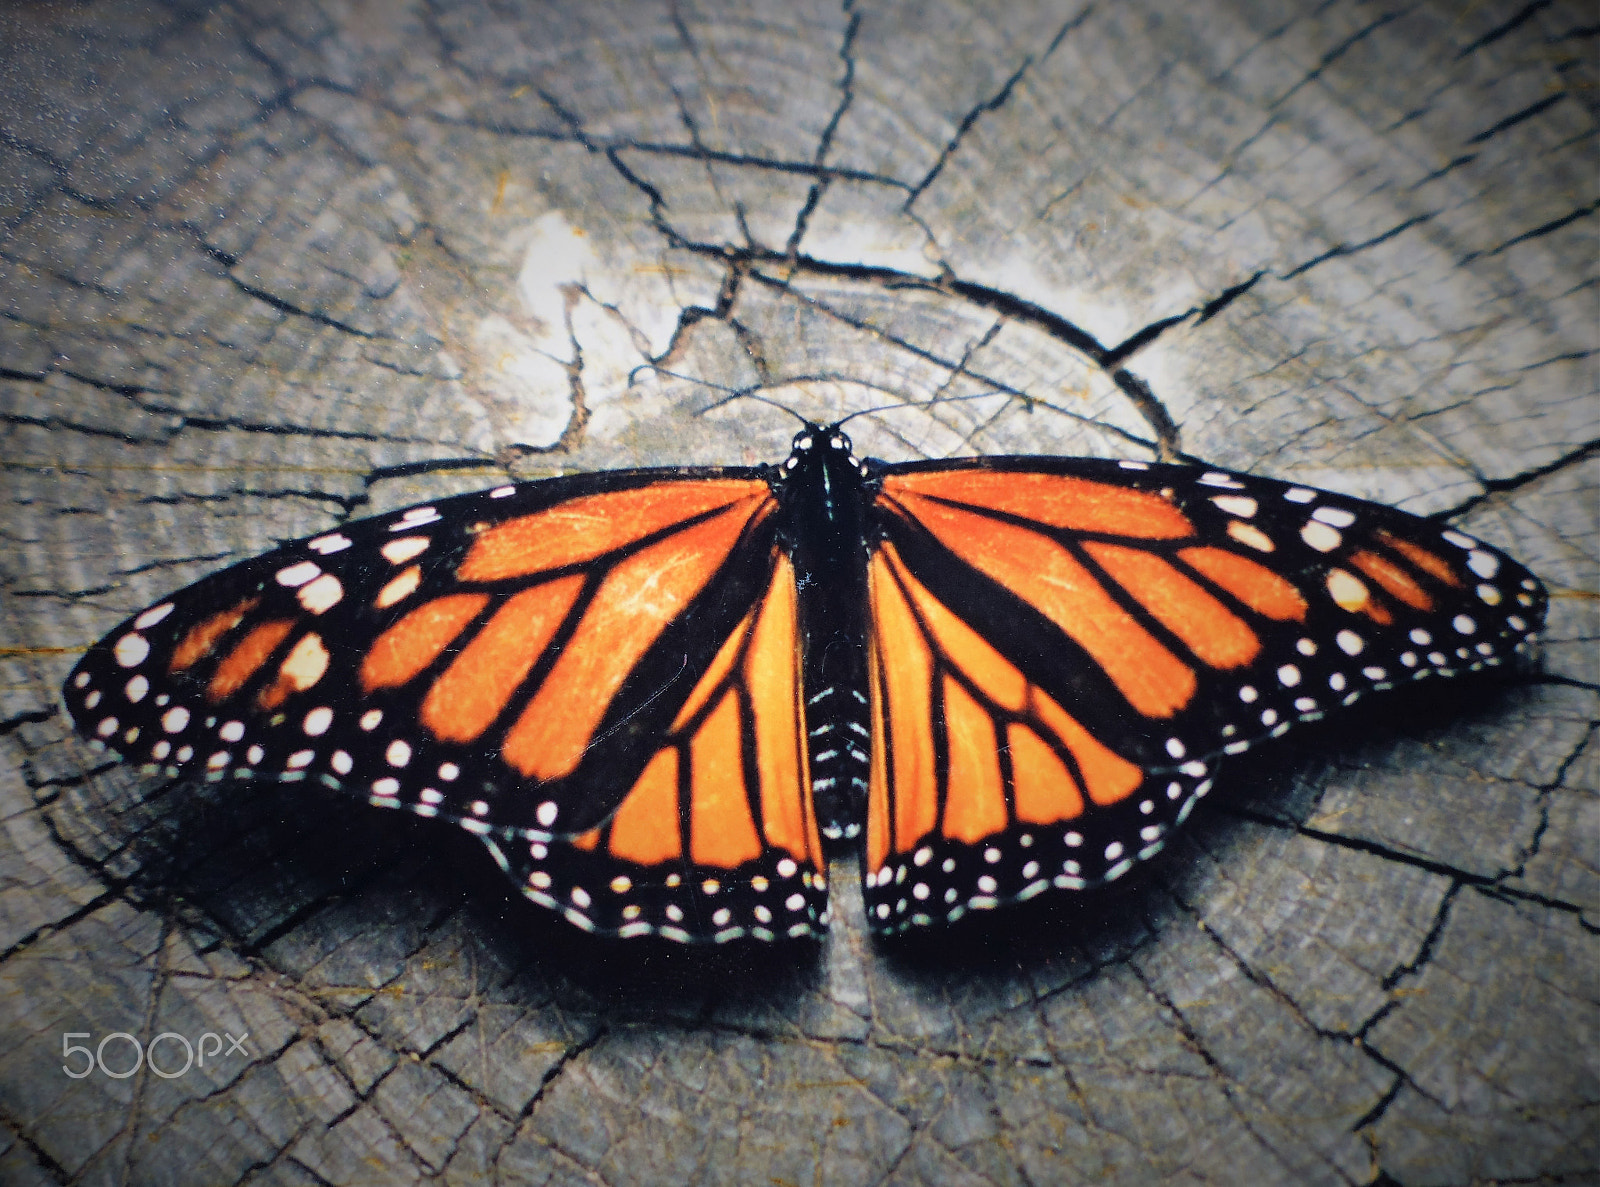 Panasonic DMC-XS1 sample photo. Mariposa monarca en descanso sobre un tronco photography